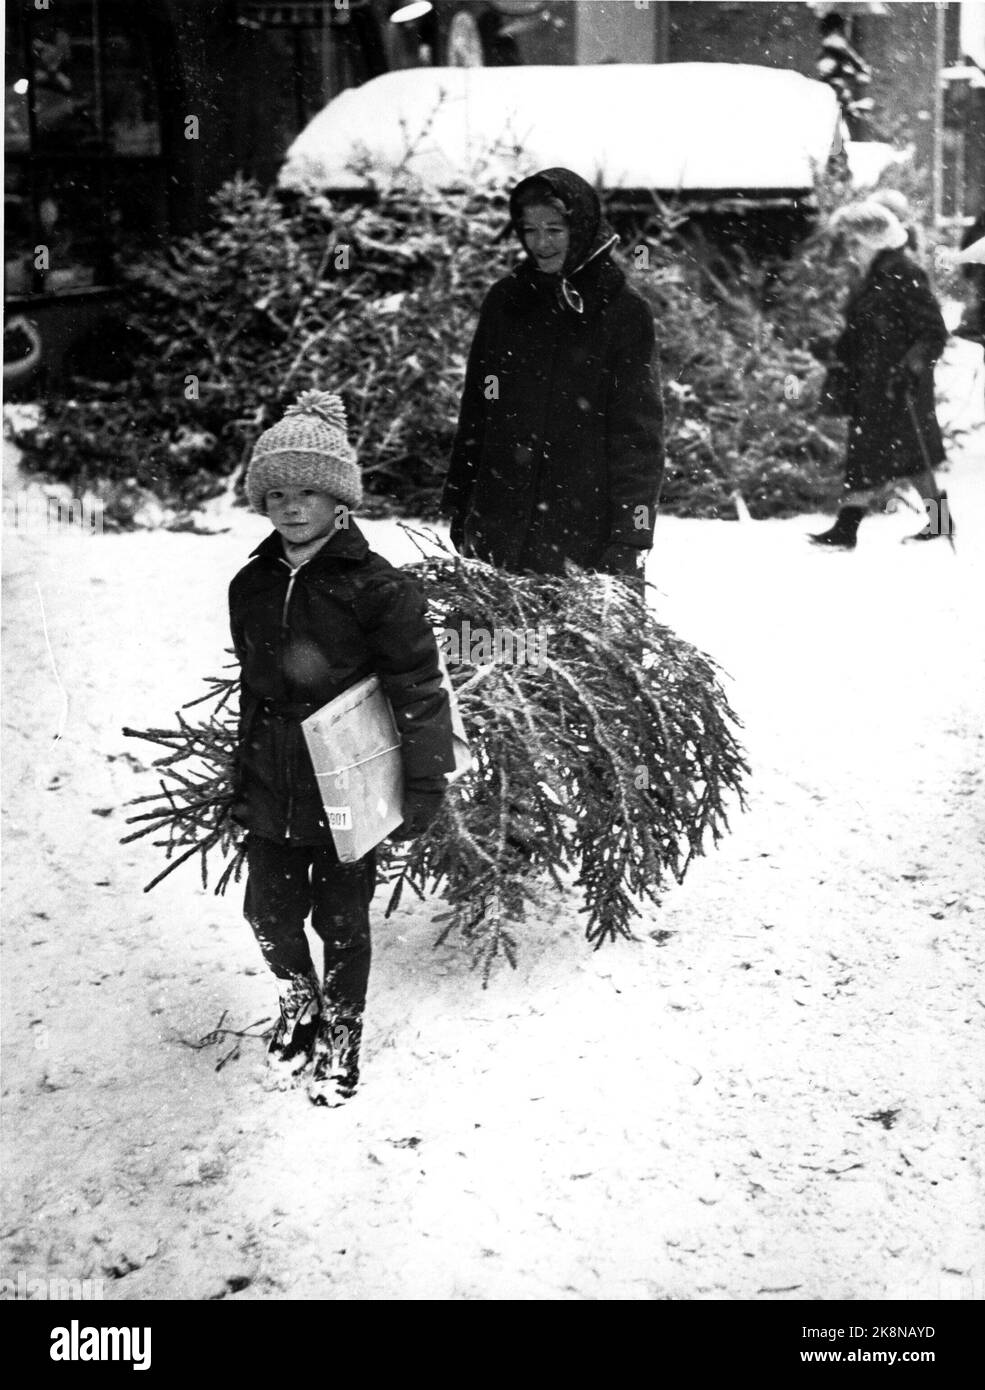 1967-12 achats d'arbres de Noël. Garçon avec forfait et arbre de Noël. Noël. Photo: Archive NTB Banque D'Images